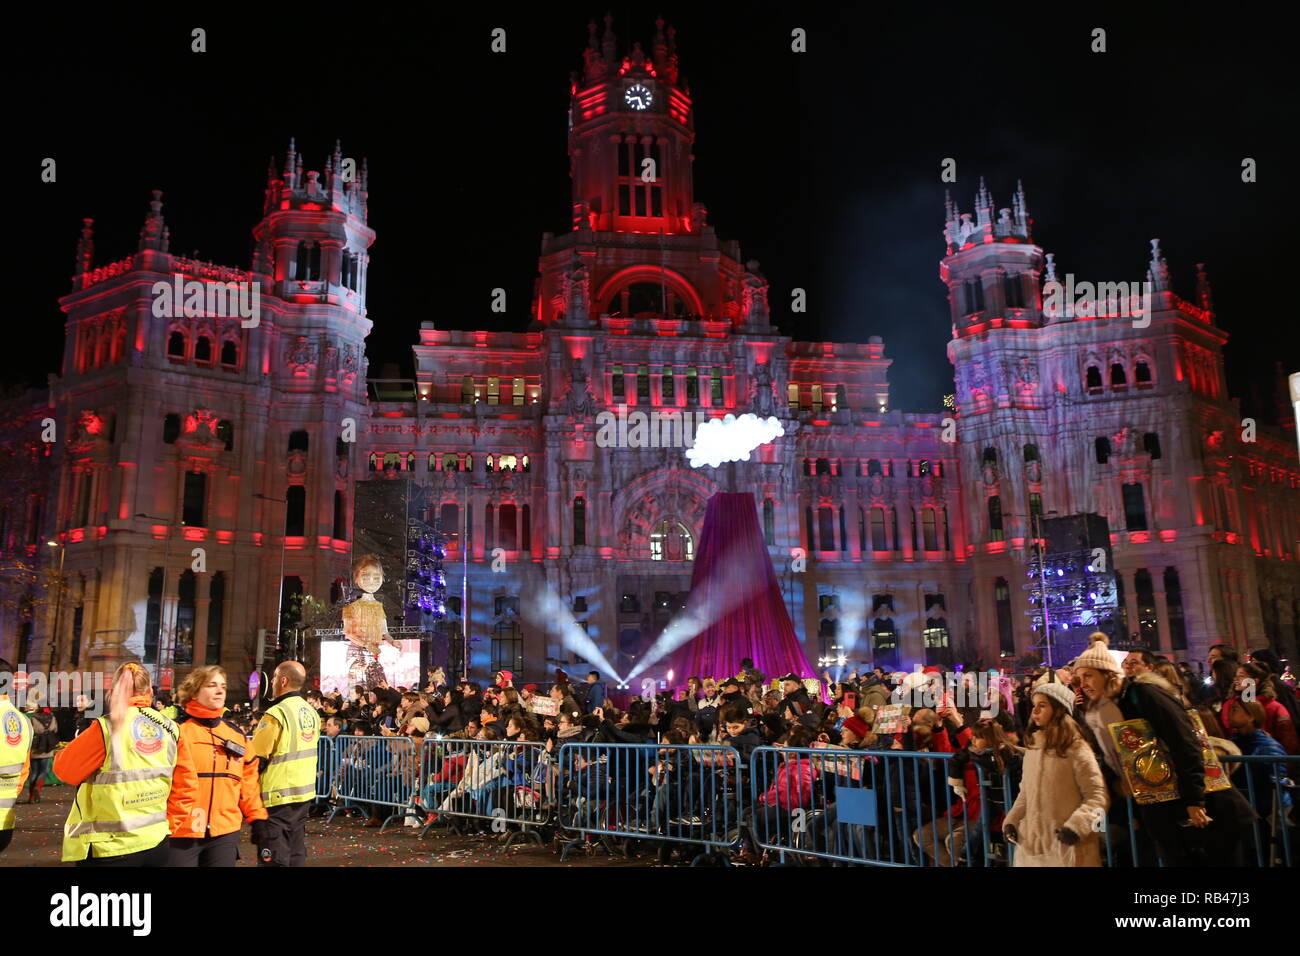 Eine riesige Menschenmenge gesehen für die drei Könige aus dem Morgenland Parade in Madrid versammelt. Die Parade mit mehr als acht Wagen und etwa zweitausend Menschen bildeten die großen Gefolge. Vier internationale Firmen verteilt Geschenke auf dem Weg. Stockfoto